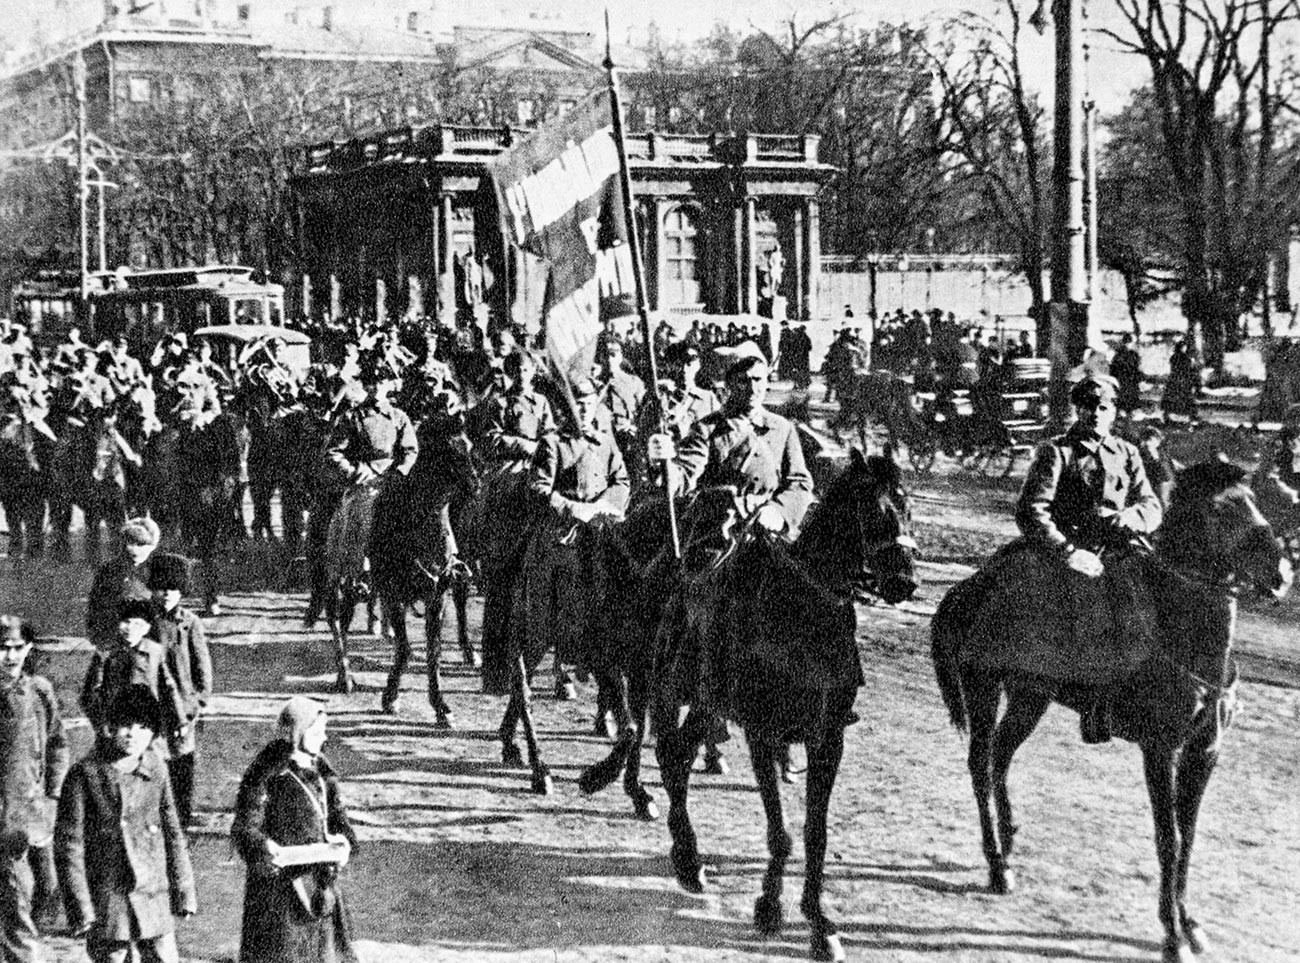 1er Régiment de cavalerie du 1er Corps de cavalerie de l'Armée rouge traversant les rues d’une ville.